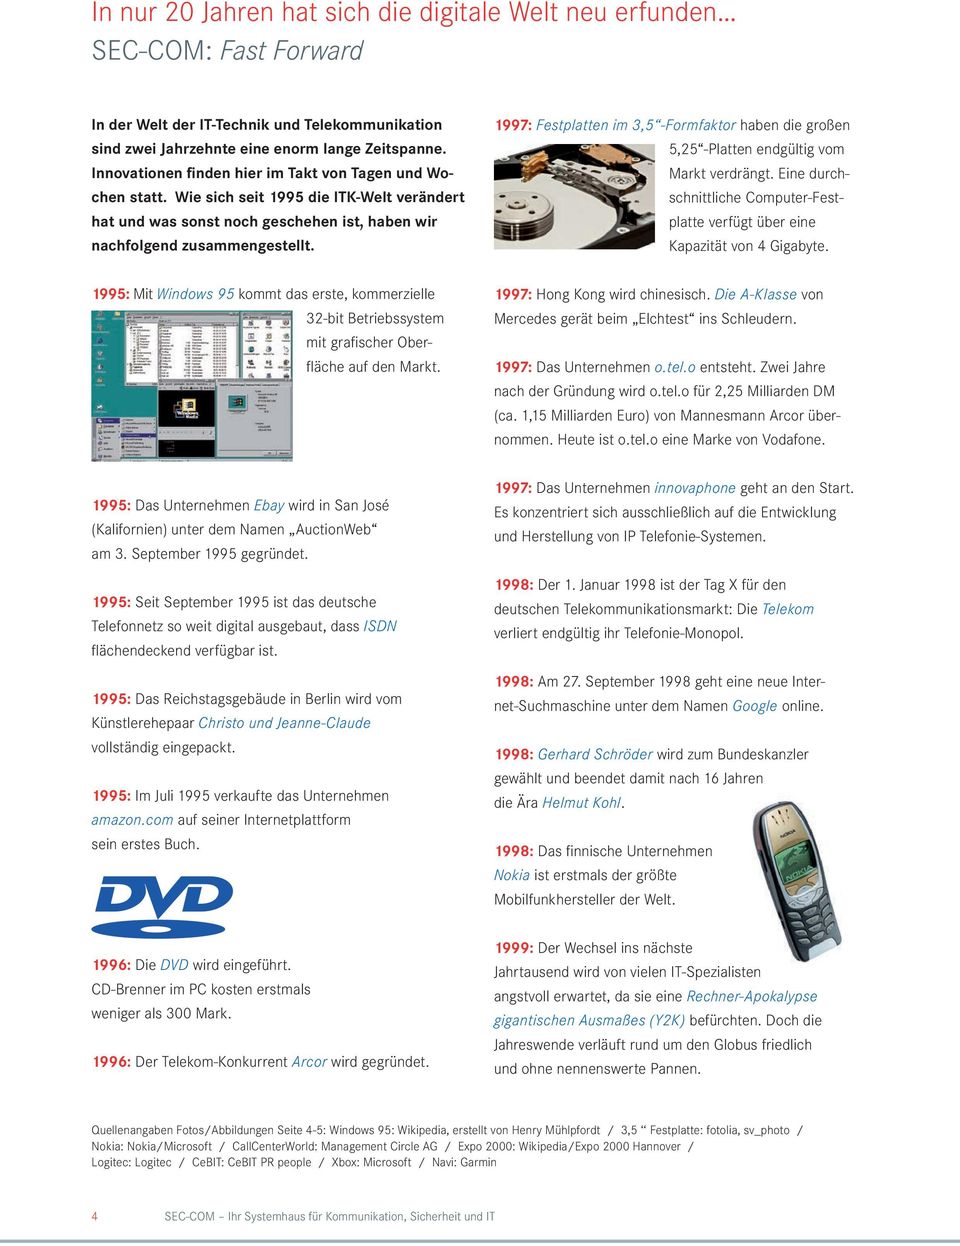 1997: Festplatten im 3,5 -Formfaktor haben die großen 5,25 -Platten endgültig vom Markt verdrängt. Eine durchschnittliche Computer-Festplatte verfügt über eine Kapazität von 4 Gigabyte.